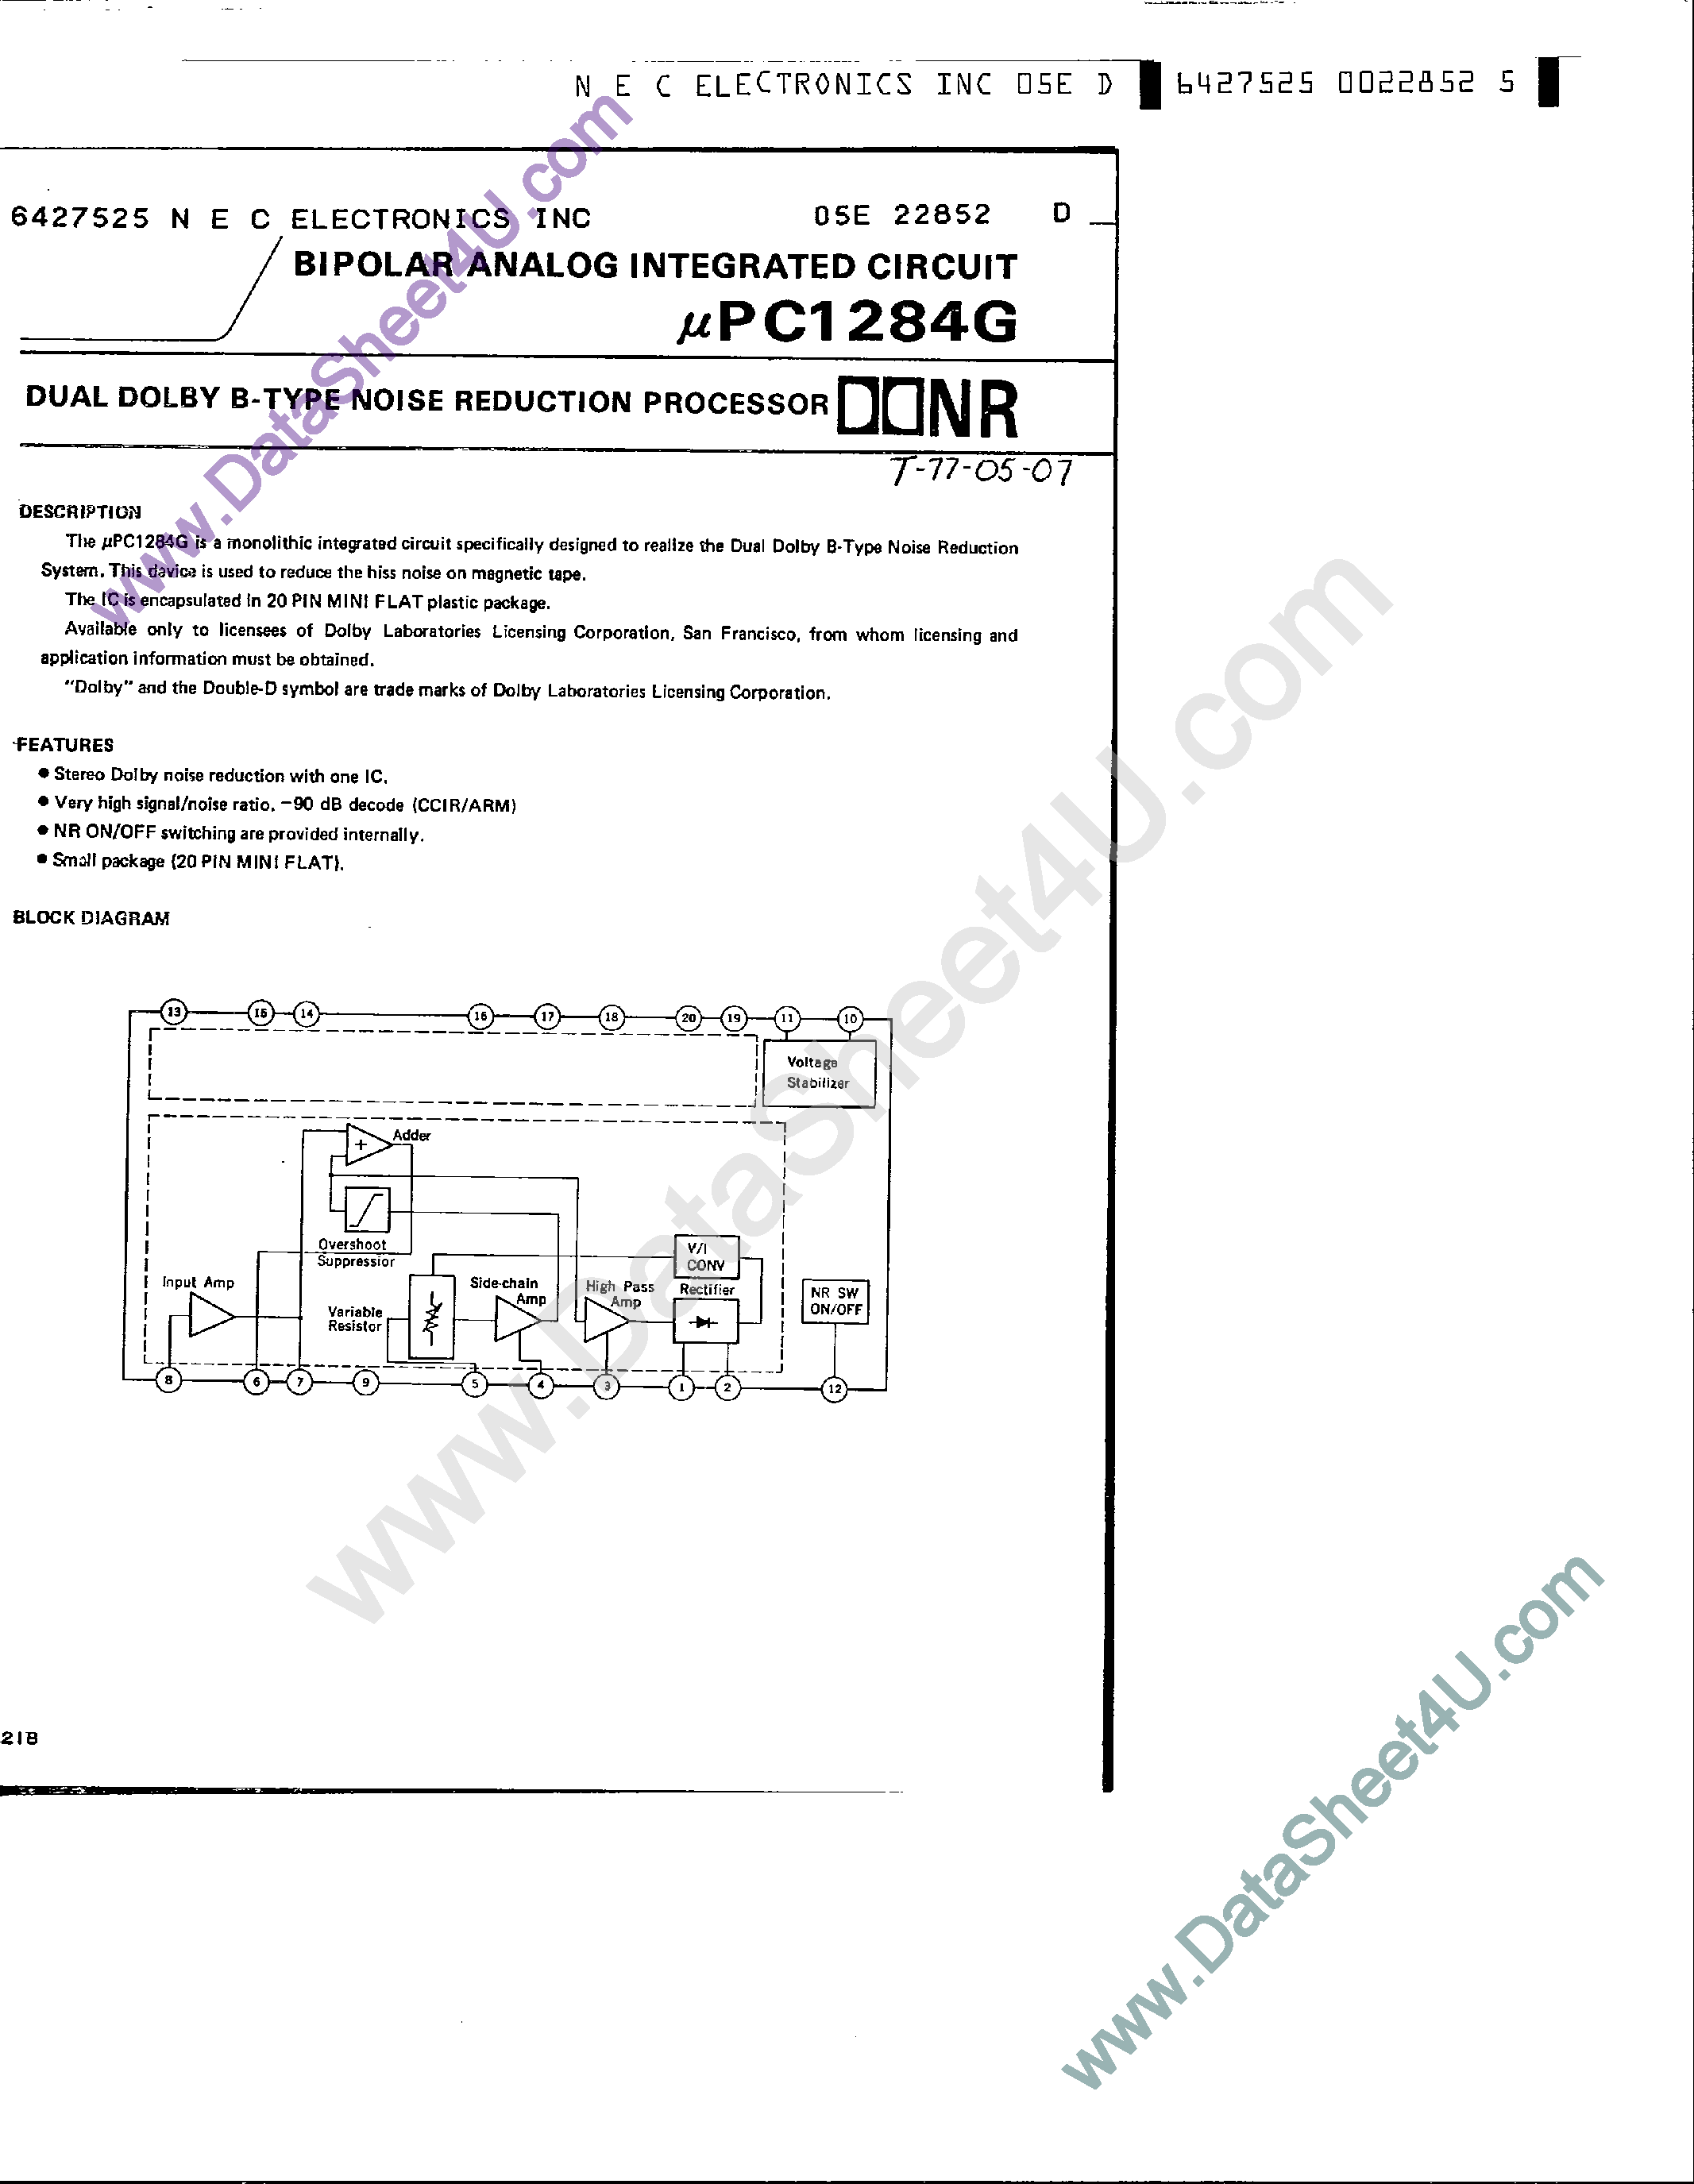 Datasheet UPC1284G - Noise Reduction Circuit - Dobly B page 1